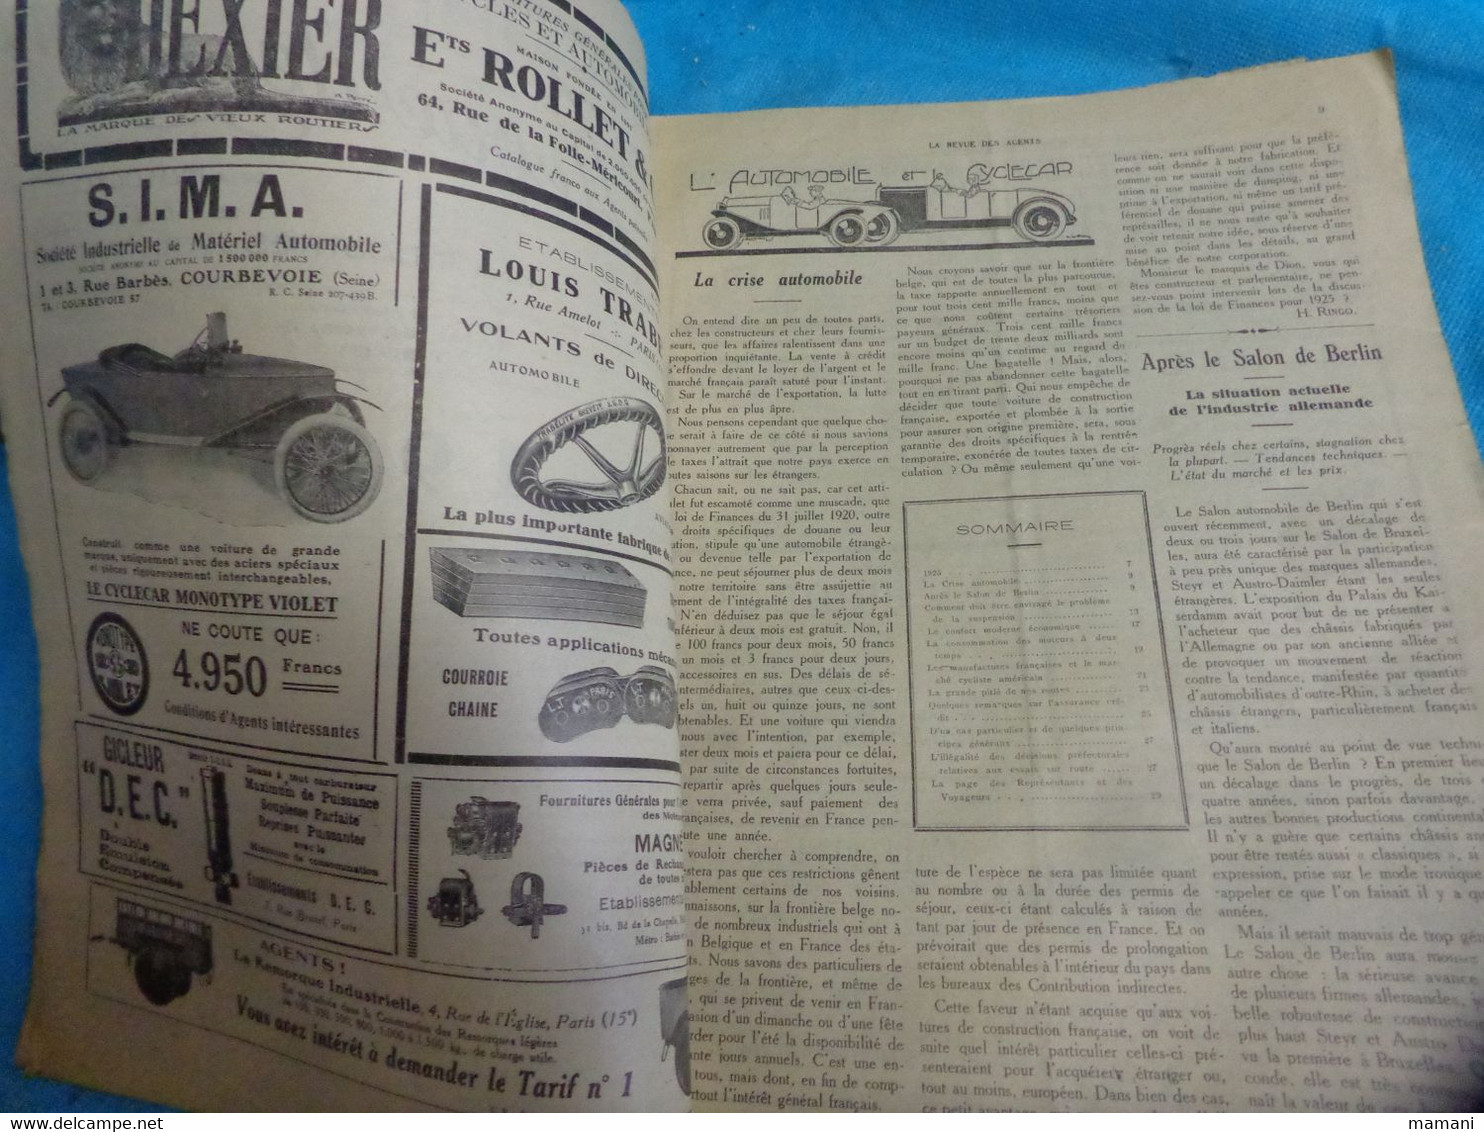 la revue des agents 10 janvier 1925-cycle motocyclryyr-automobile et des industries s'y rattachant-stop fire extincteur